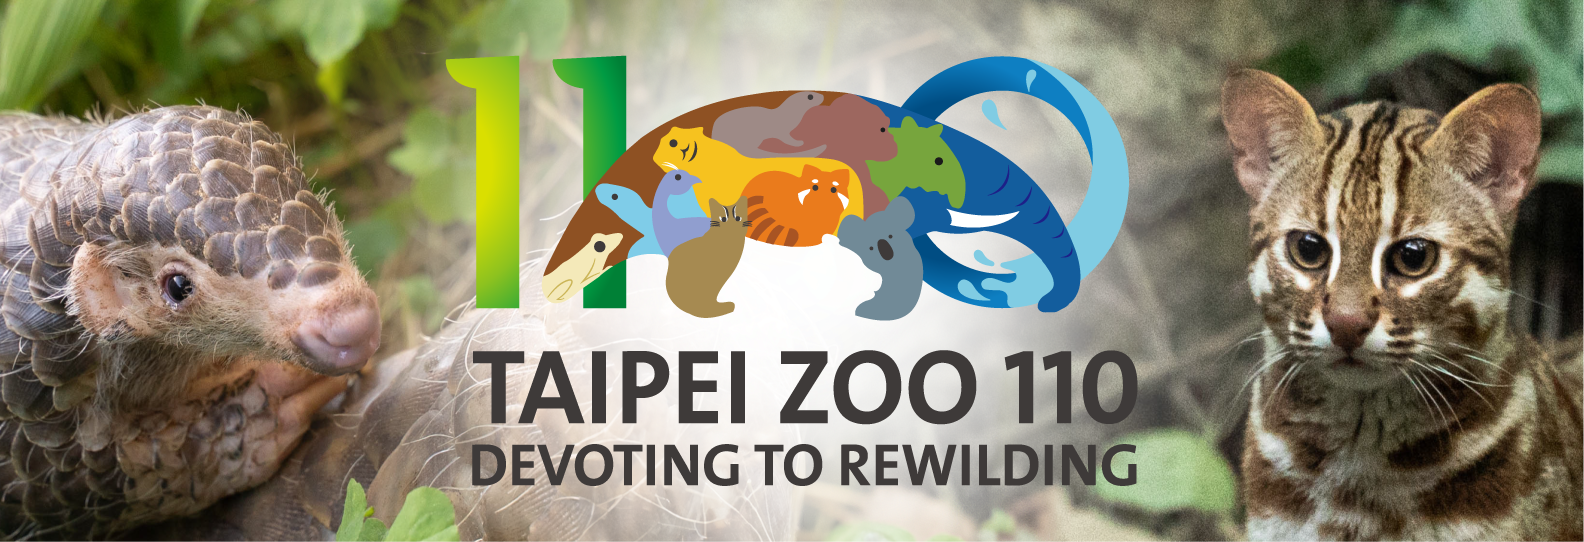 動物園110周年「Devoting to Rewilding」